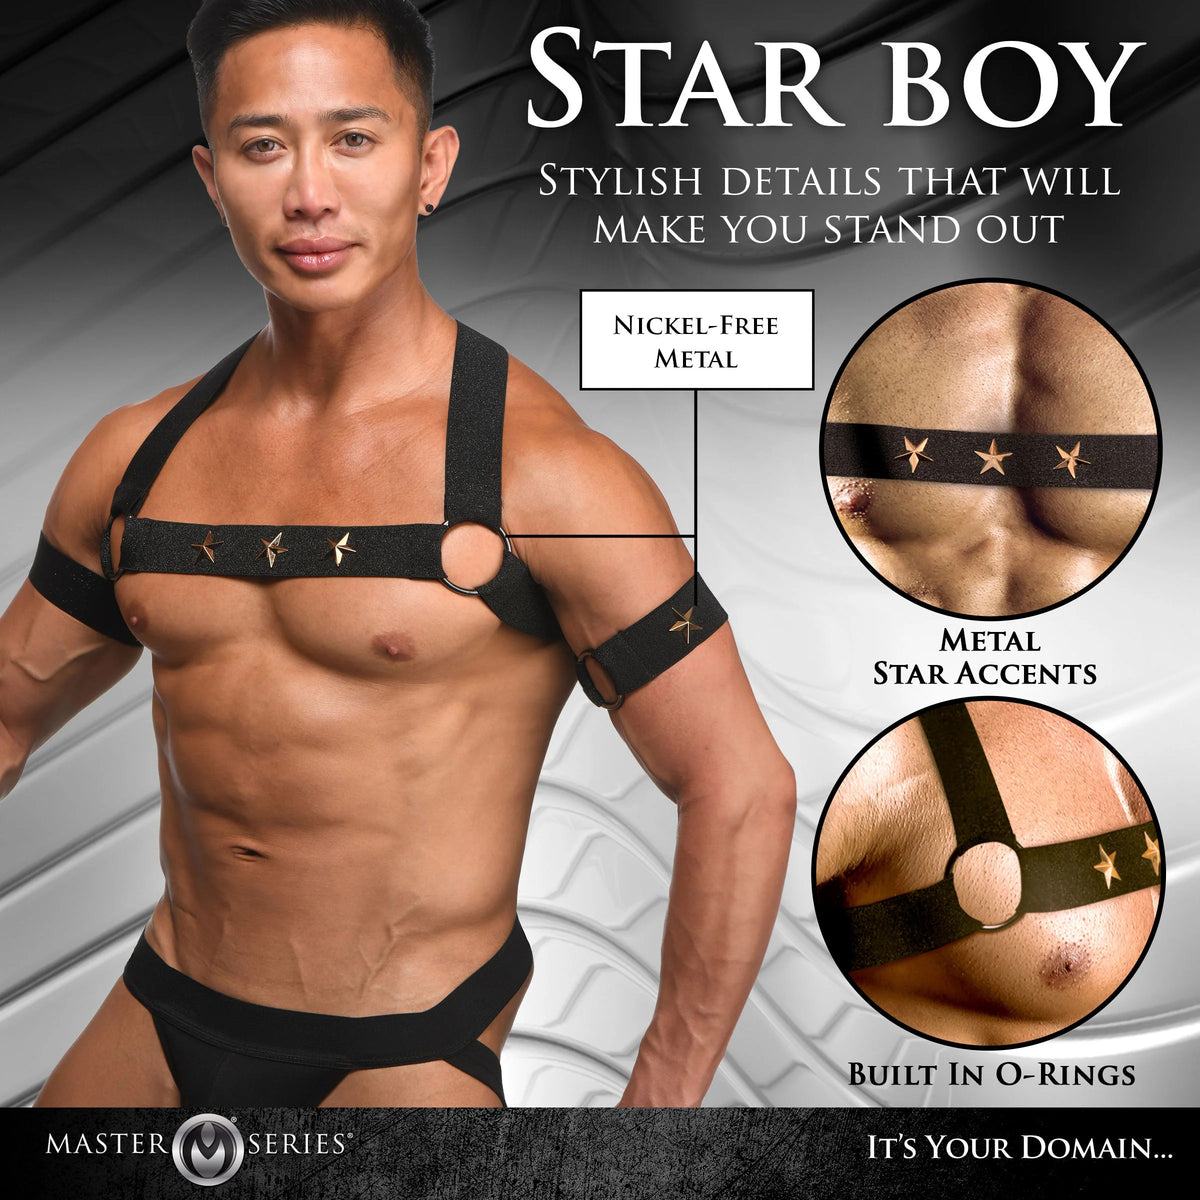 Arnés de pecho masculino Star Boy con brazaletes - Pequeño/mediano - Negro